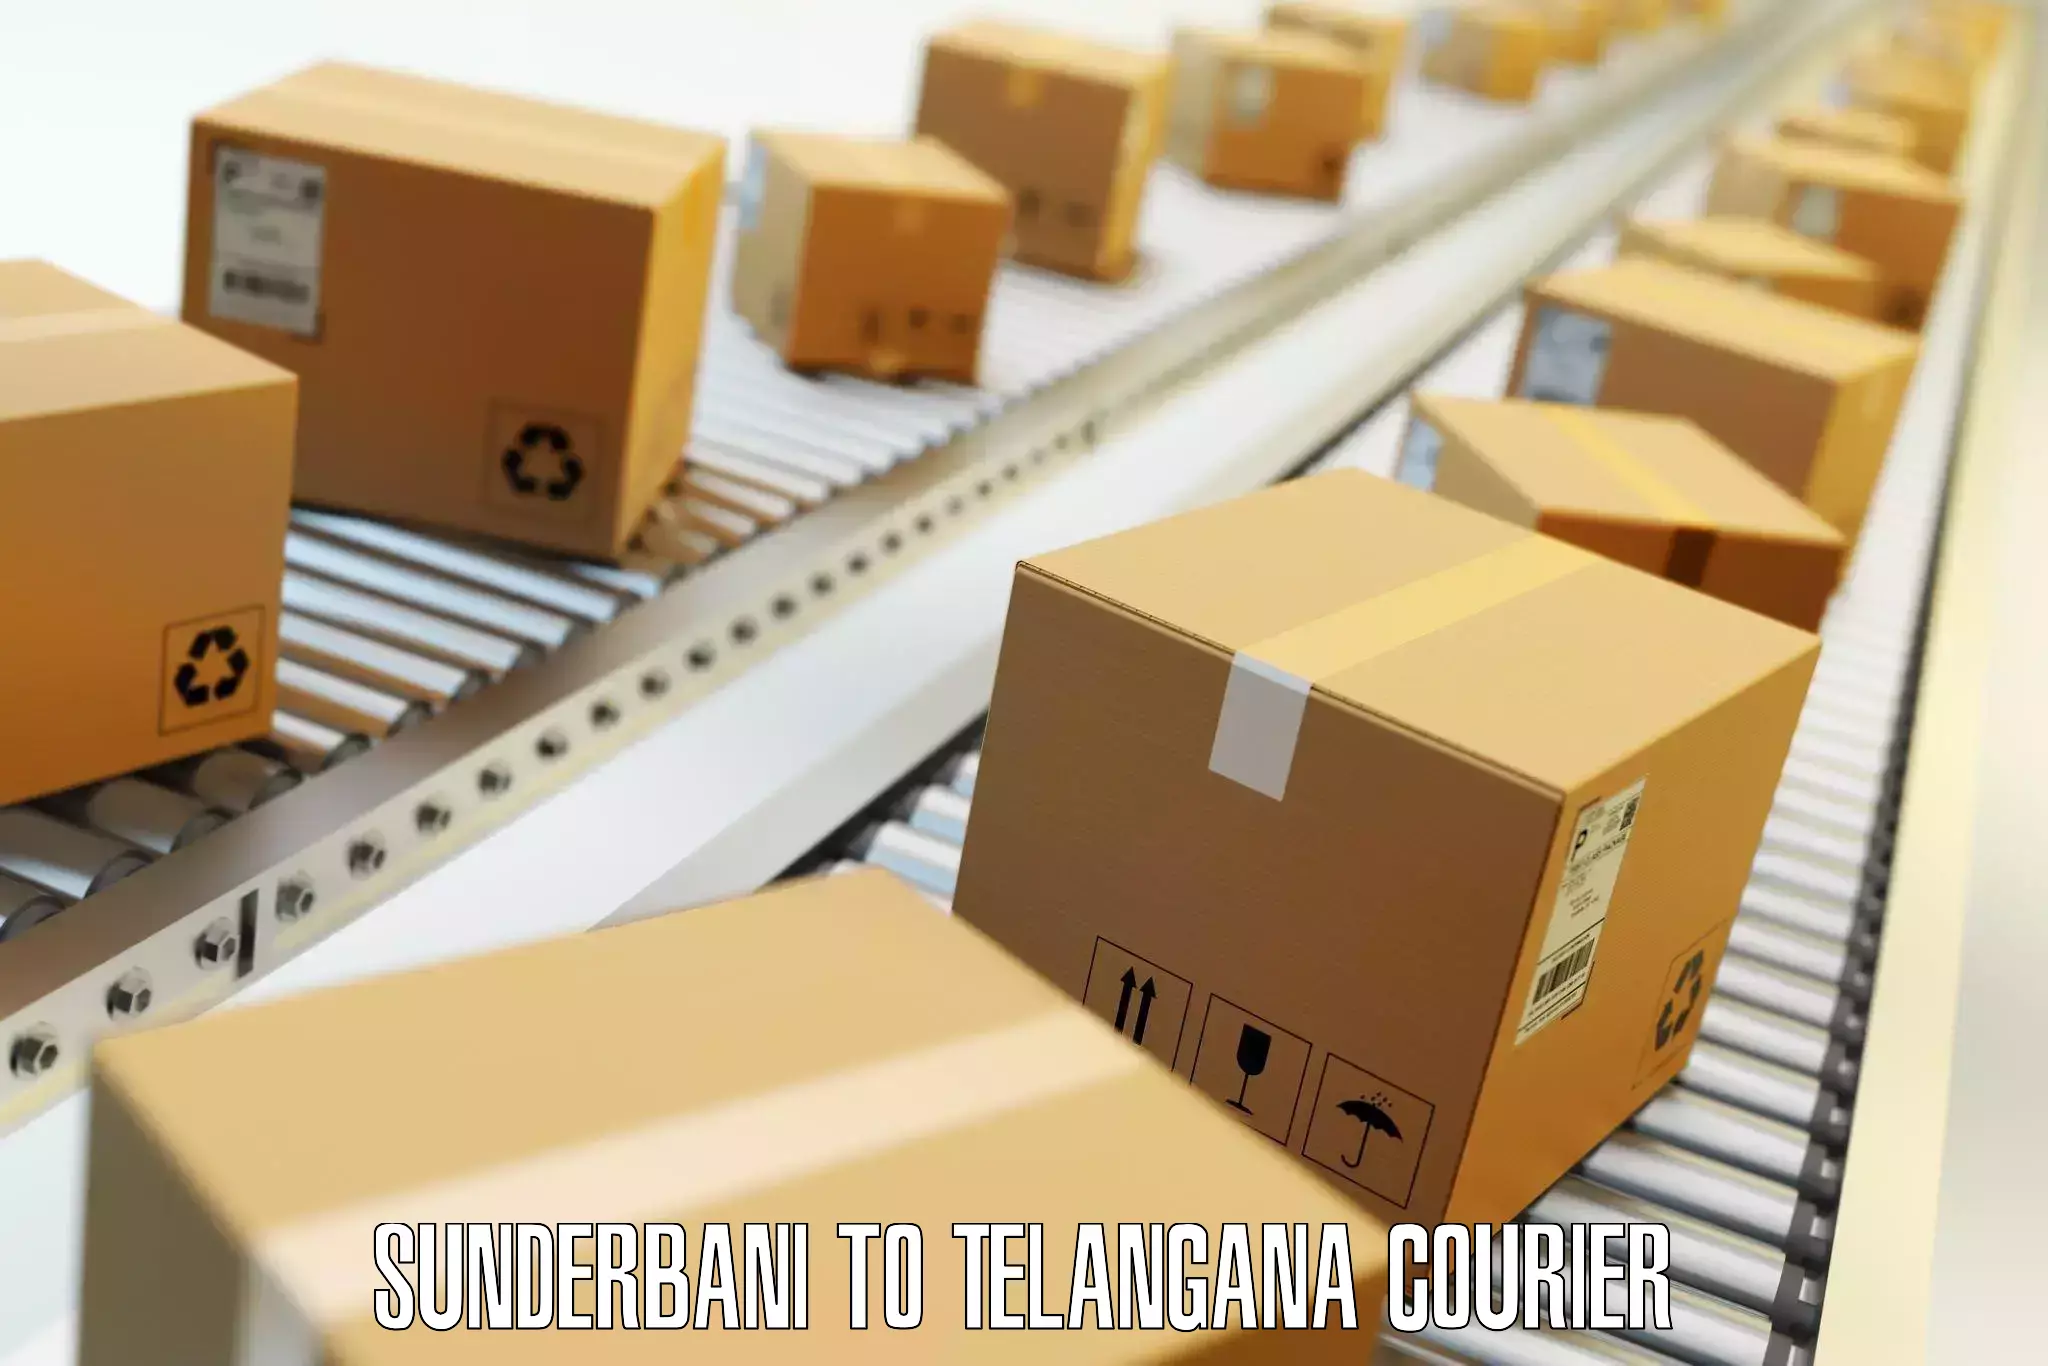 Luggage shipment tracking Sunderbani to Yerrupalem